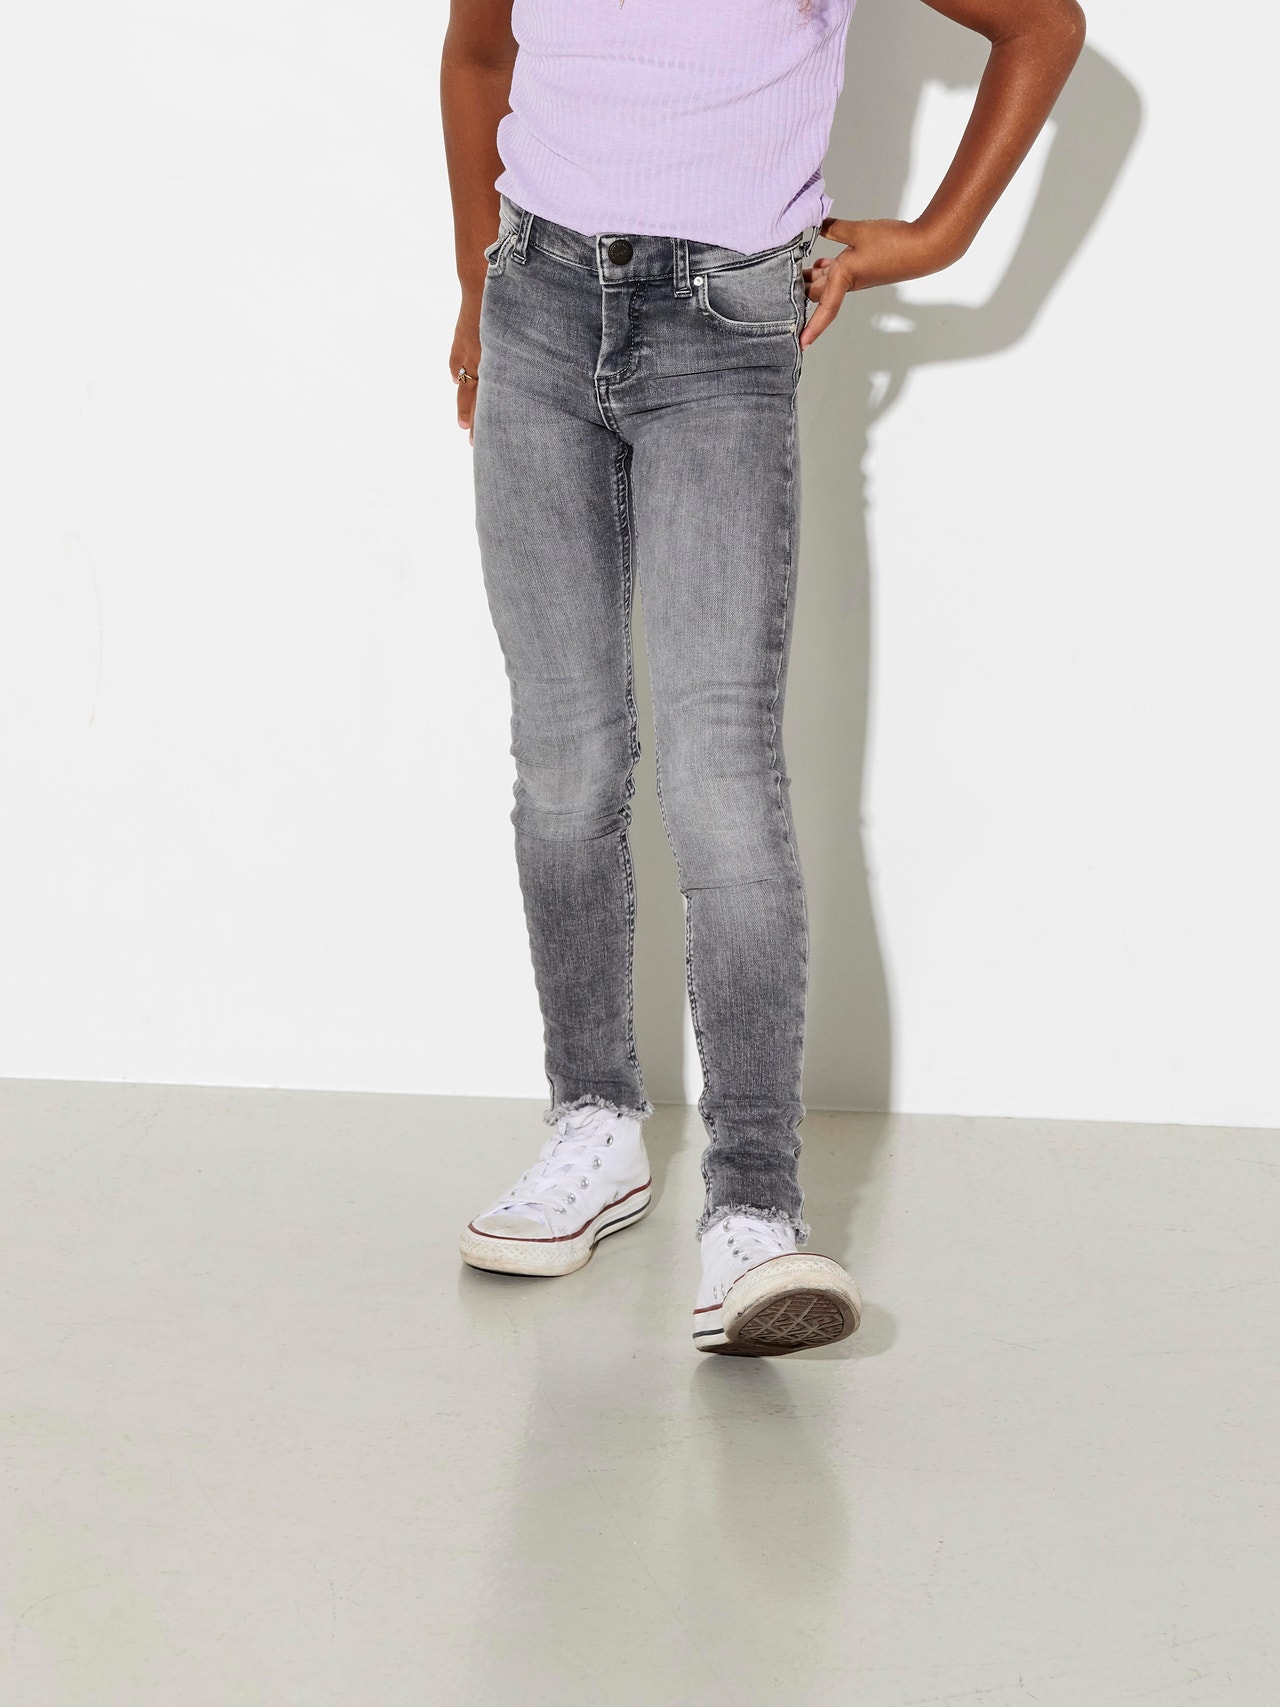 ONLY Blush Skinny jeans -Grey Denim - 15173843